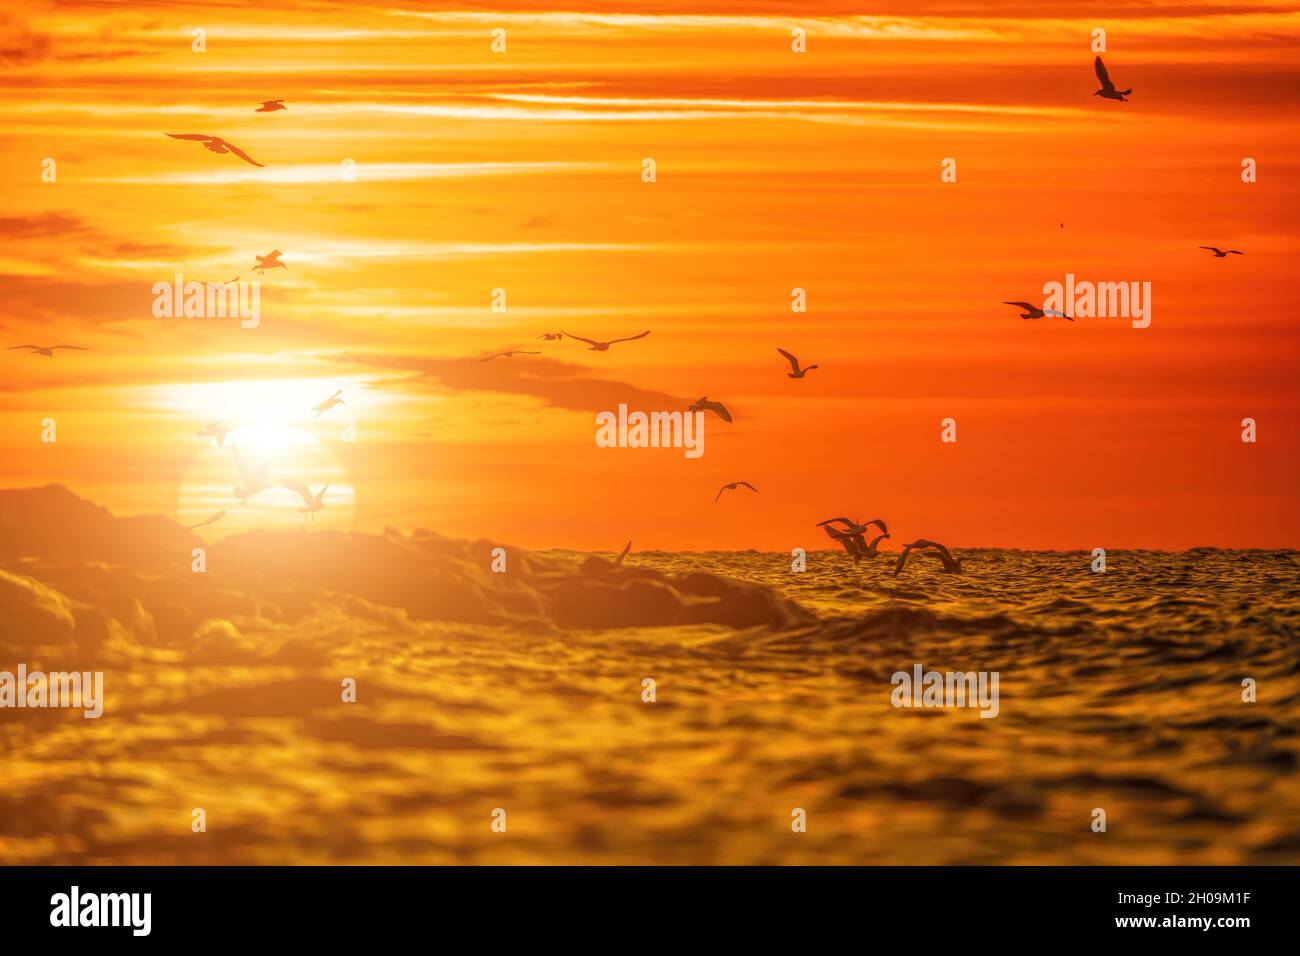 Eine Schar Möwen fliegt und fischt im Meer. Warmer Sonnenuntergang Himmel über dem Meer, Sonneneinstrahlung. Silhouetten von Möwen, die in Zeitlupe vom fliegen Stockfoto